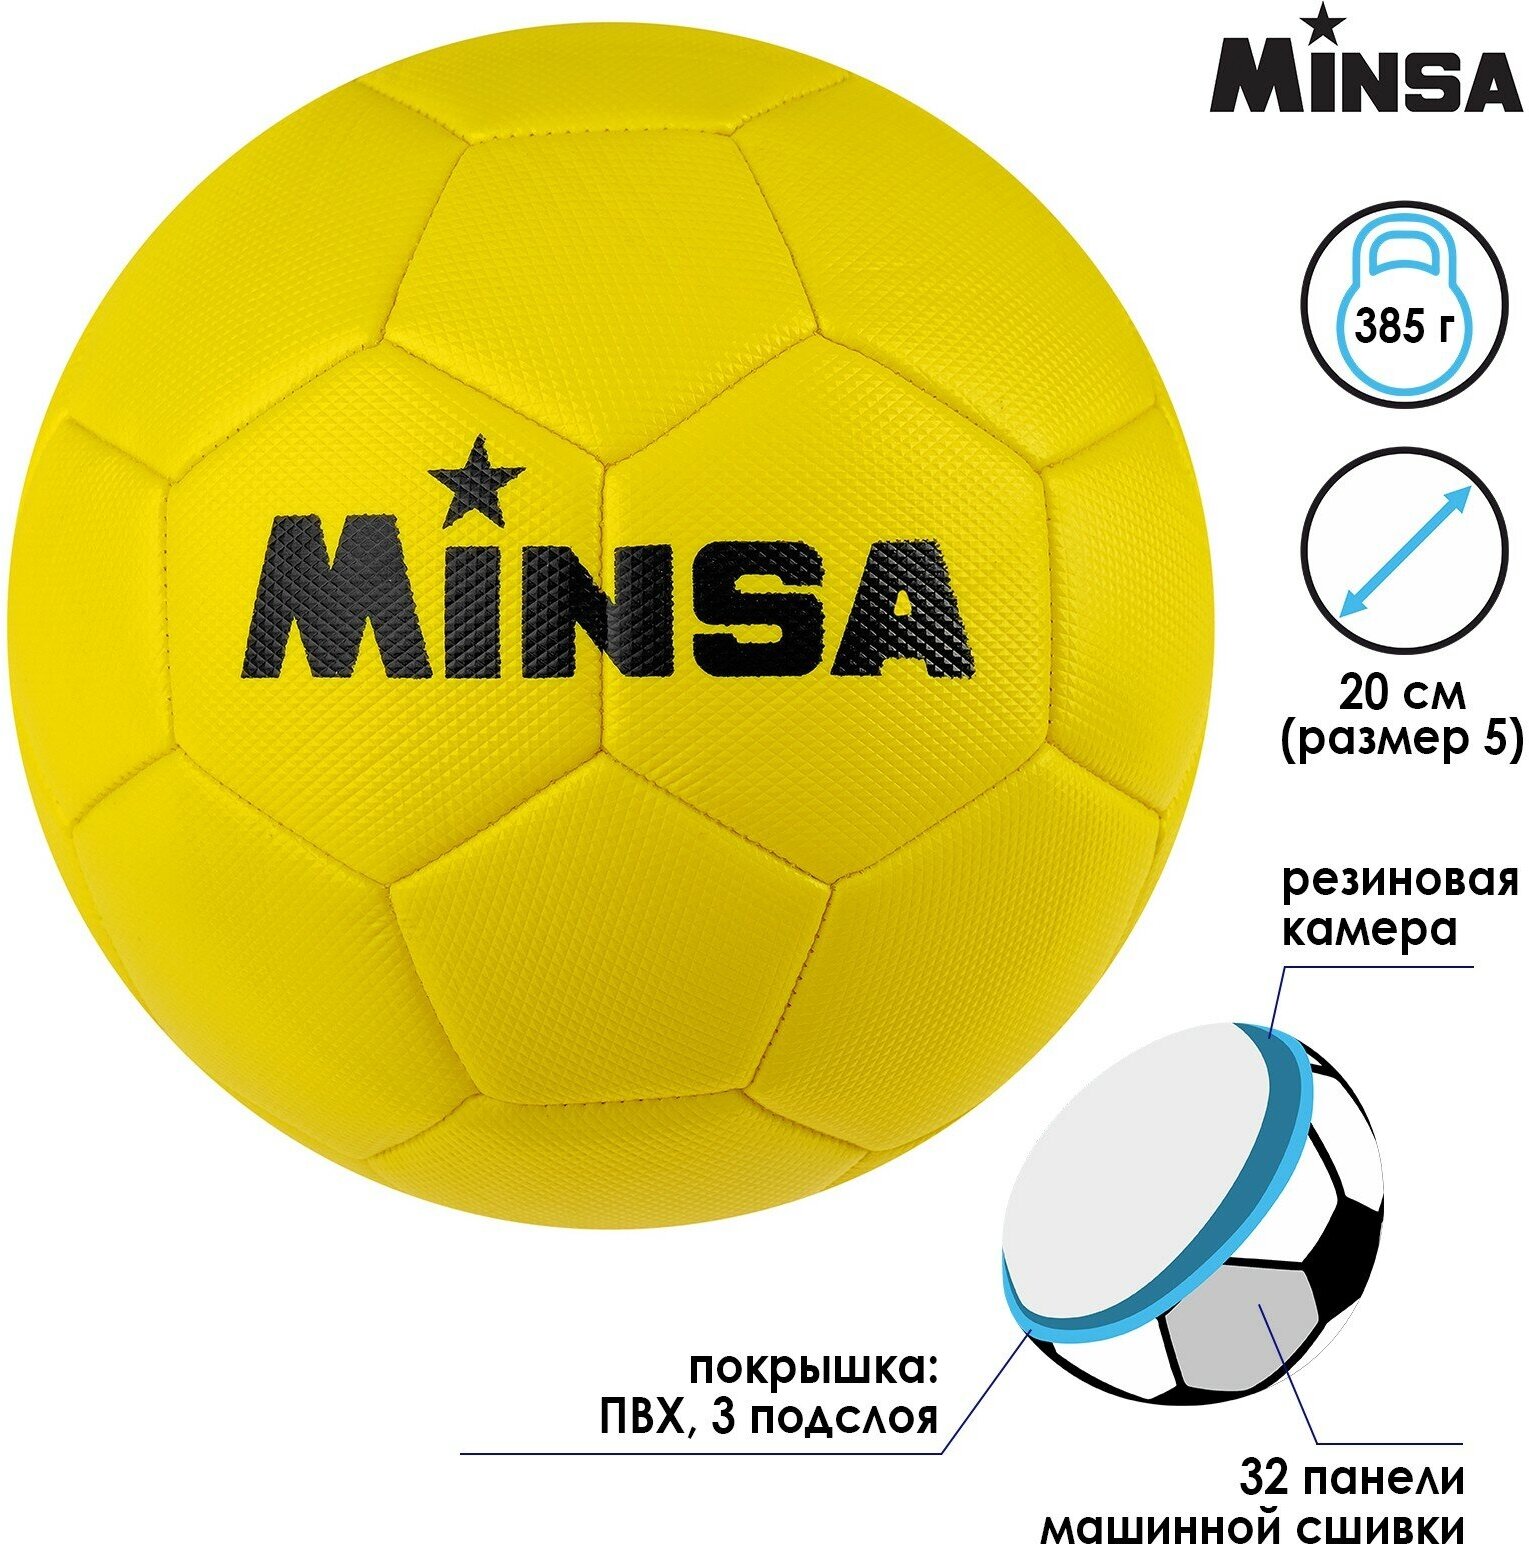 Мяч футбольный Minsa размер 5 32 панели 3-слойный желтый 350 г